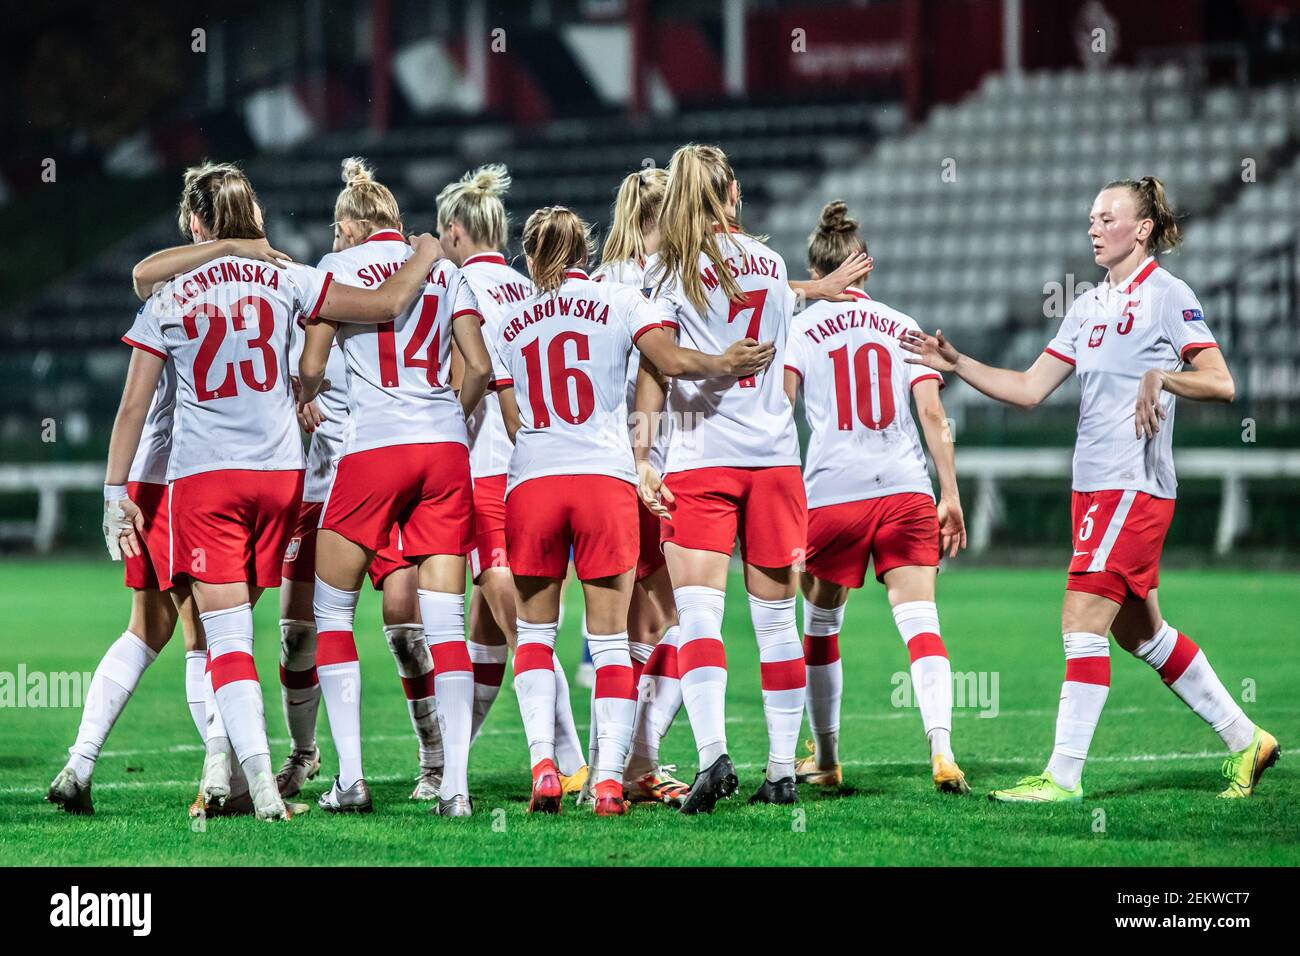 Poland women's football team celebrate a goal during the UEFA Women's EURO  2021 qualifying match between Poland and Azerbaijan at Polonia Stadium.  (Final score; Poland 3:0 Azerbaijan) (Photo by Mikolaj Barbanell /